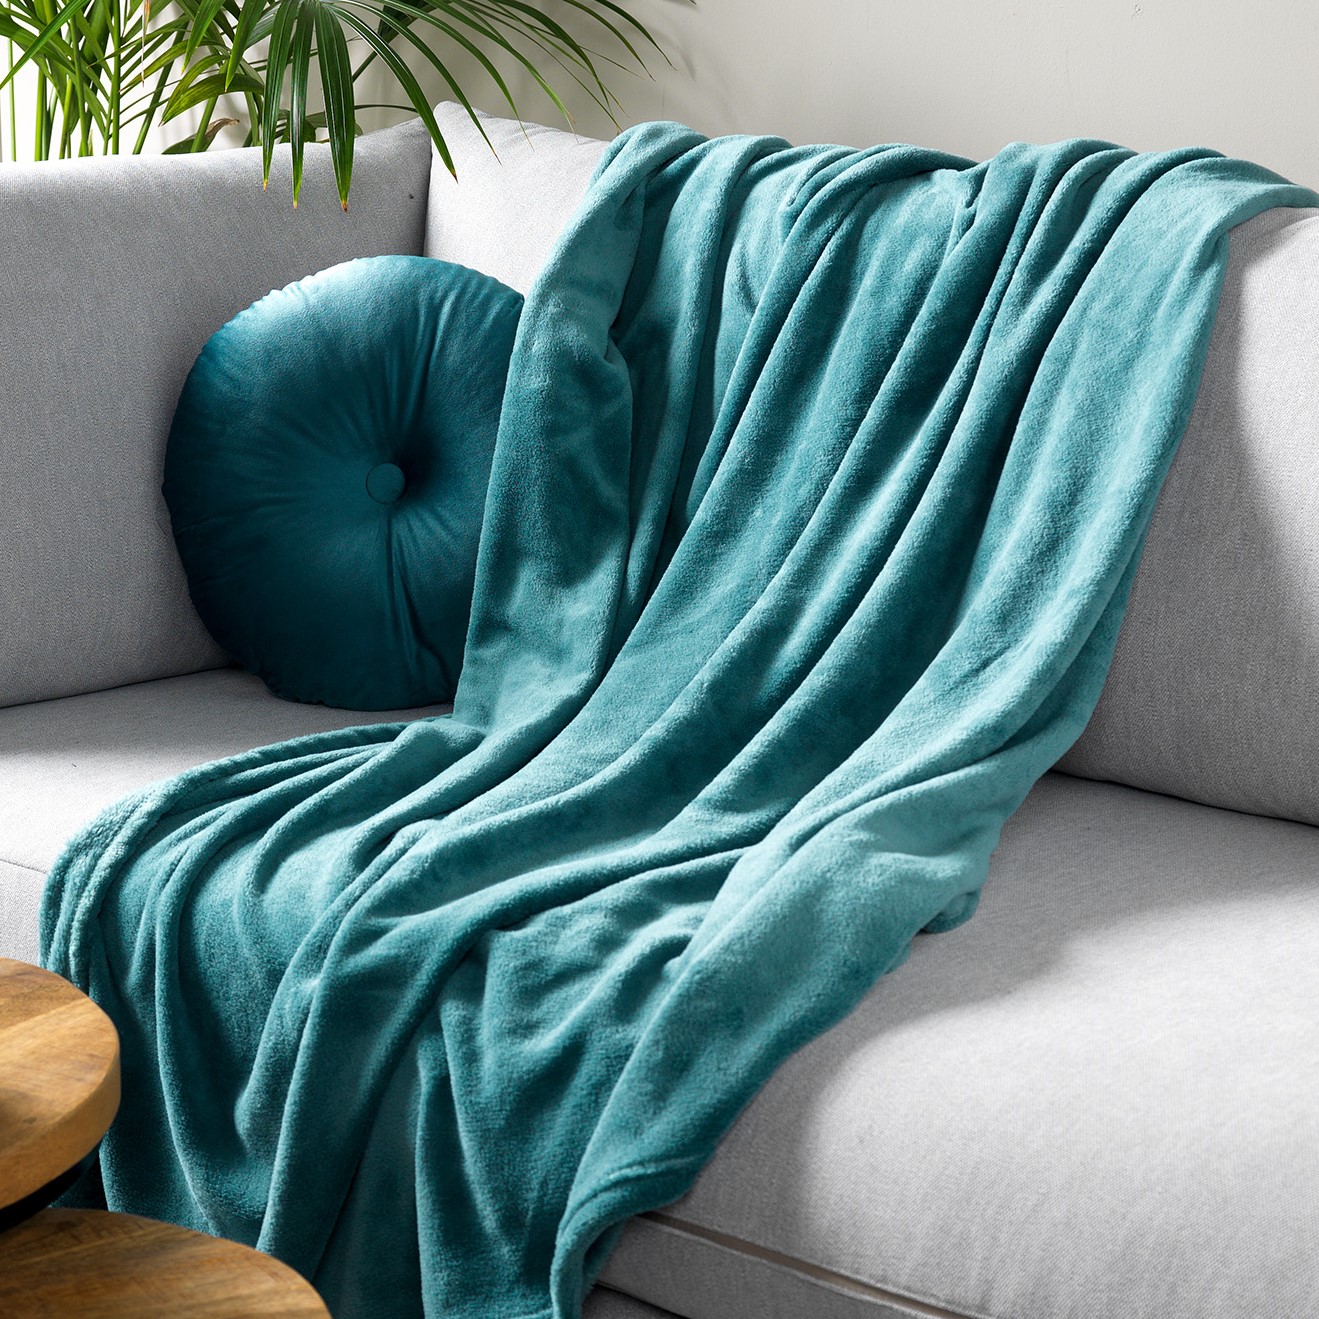 HARVEY - Plaid 150x200 cm - superzachte deken van fleece - Sagebrush Green - groen